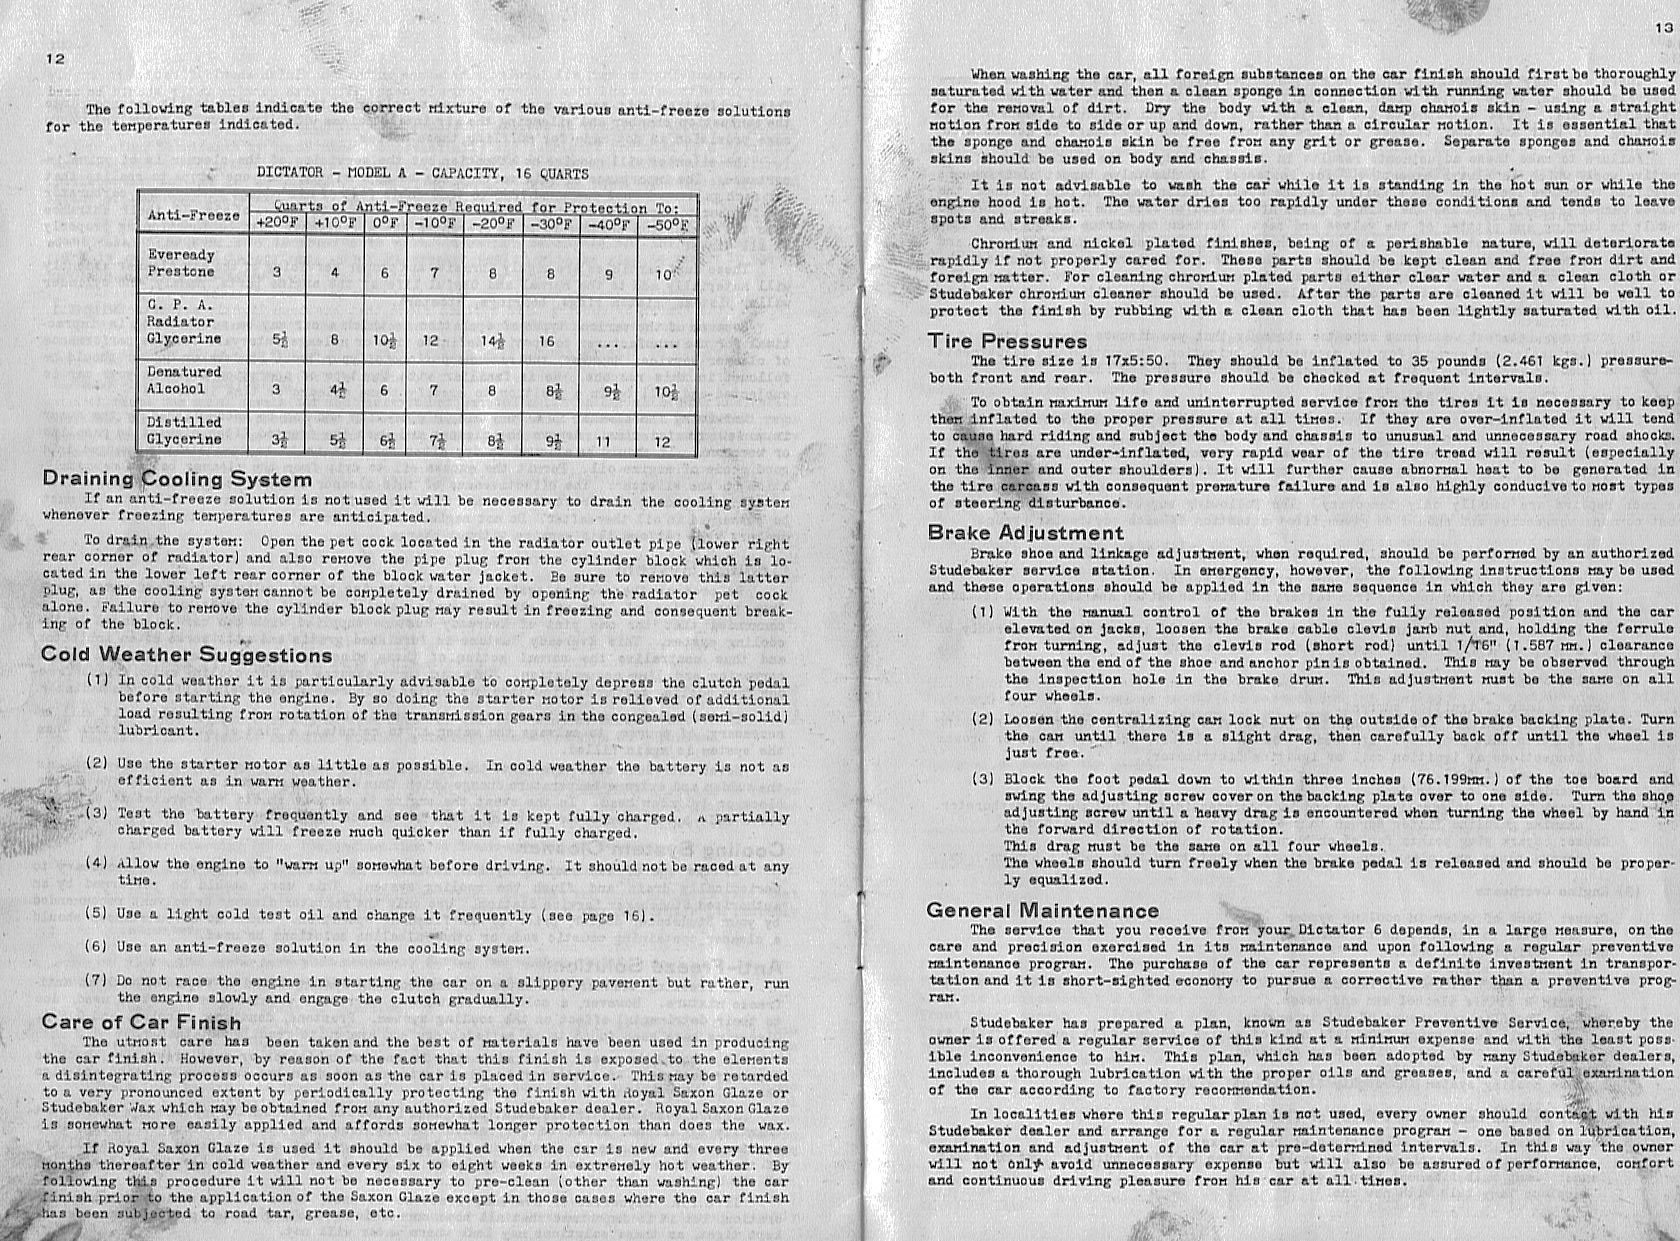 1934_Studebaker_Dictator_Manual-12-13